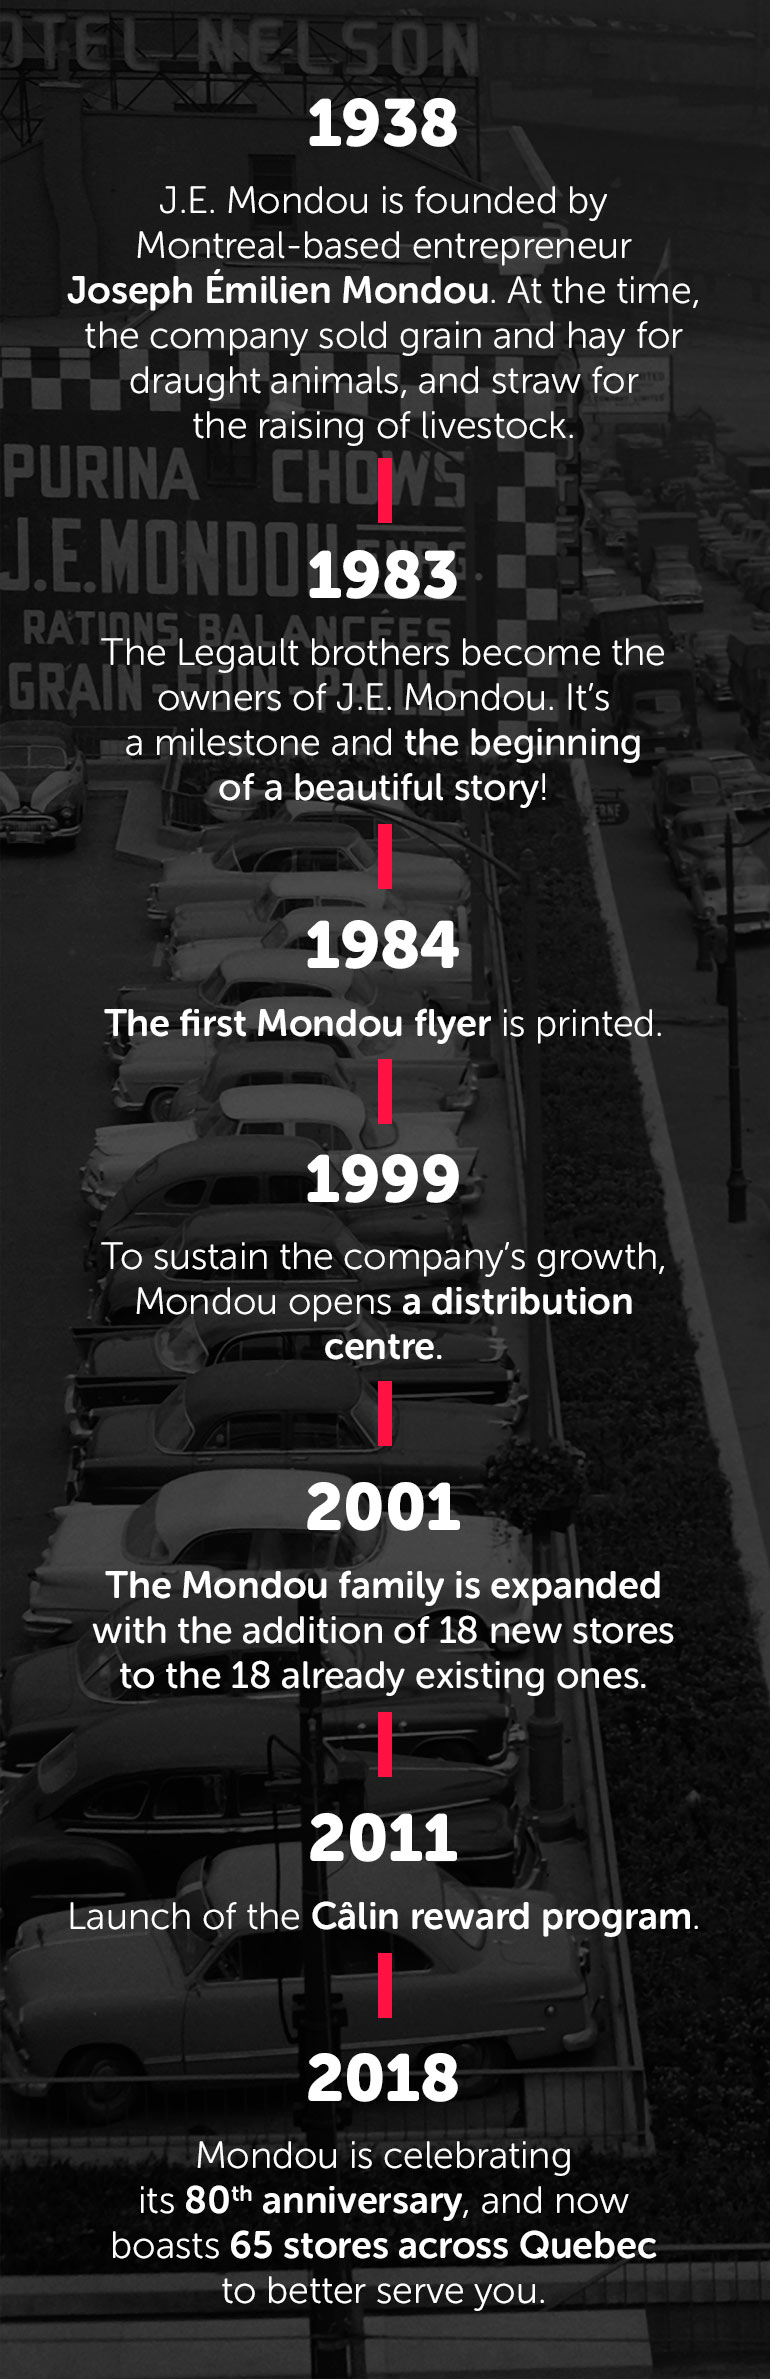 Mondou's Timeline Since 1938, Mondou shares its passion for animals!